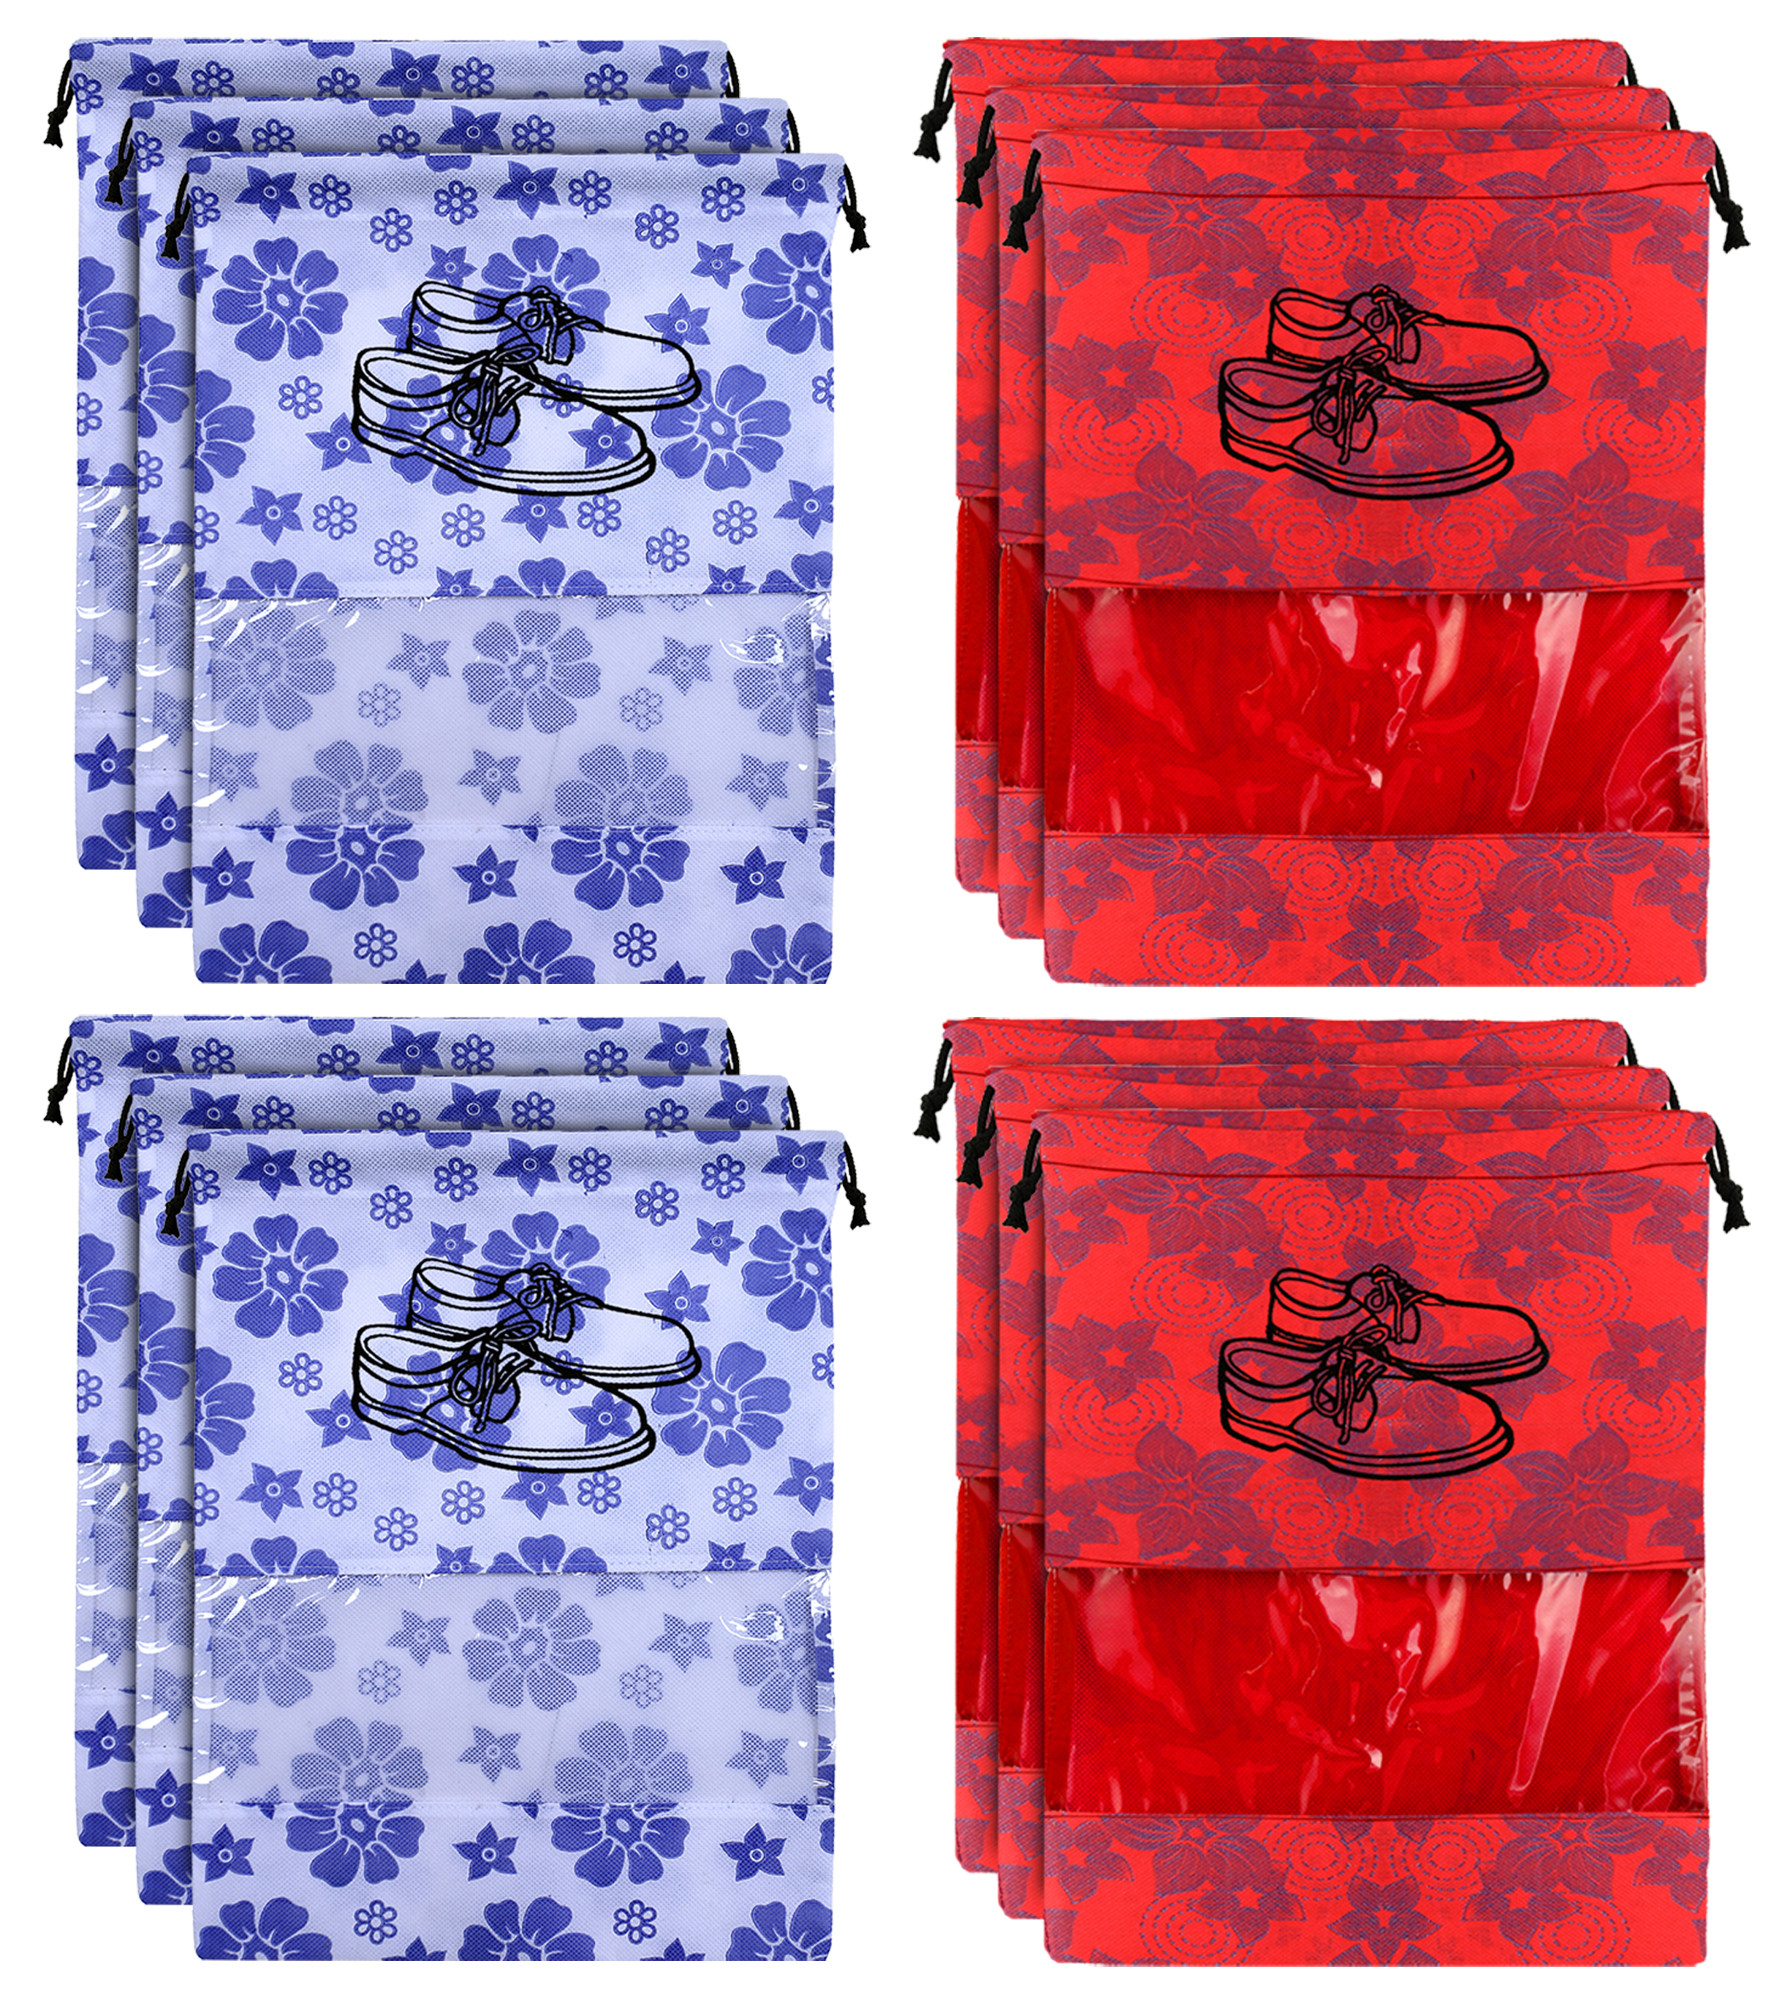 Kuber Industries Metalic Floral Design Non Woven Travel Shoe Organizer Space Saving Fabric Storage Bags Organizer, Royal Blue & Red-KUBMART1078